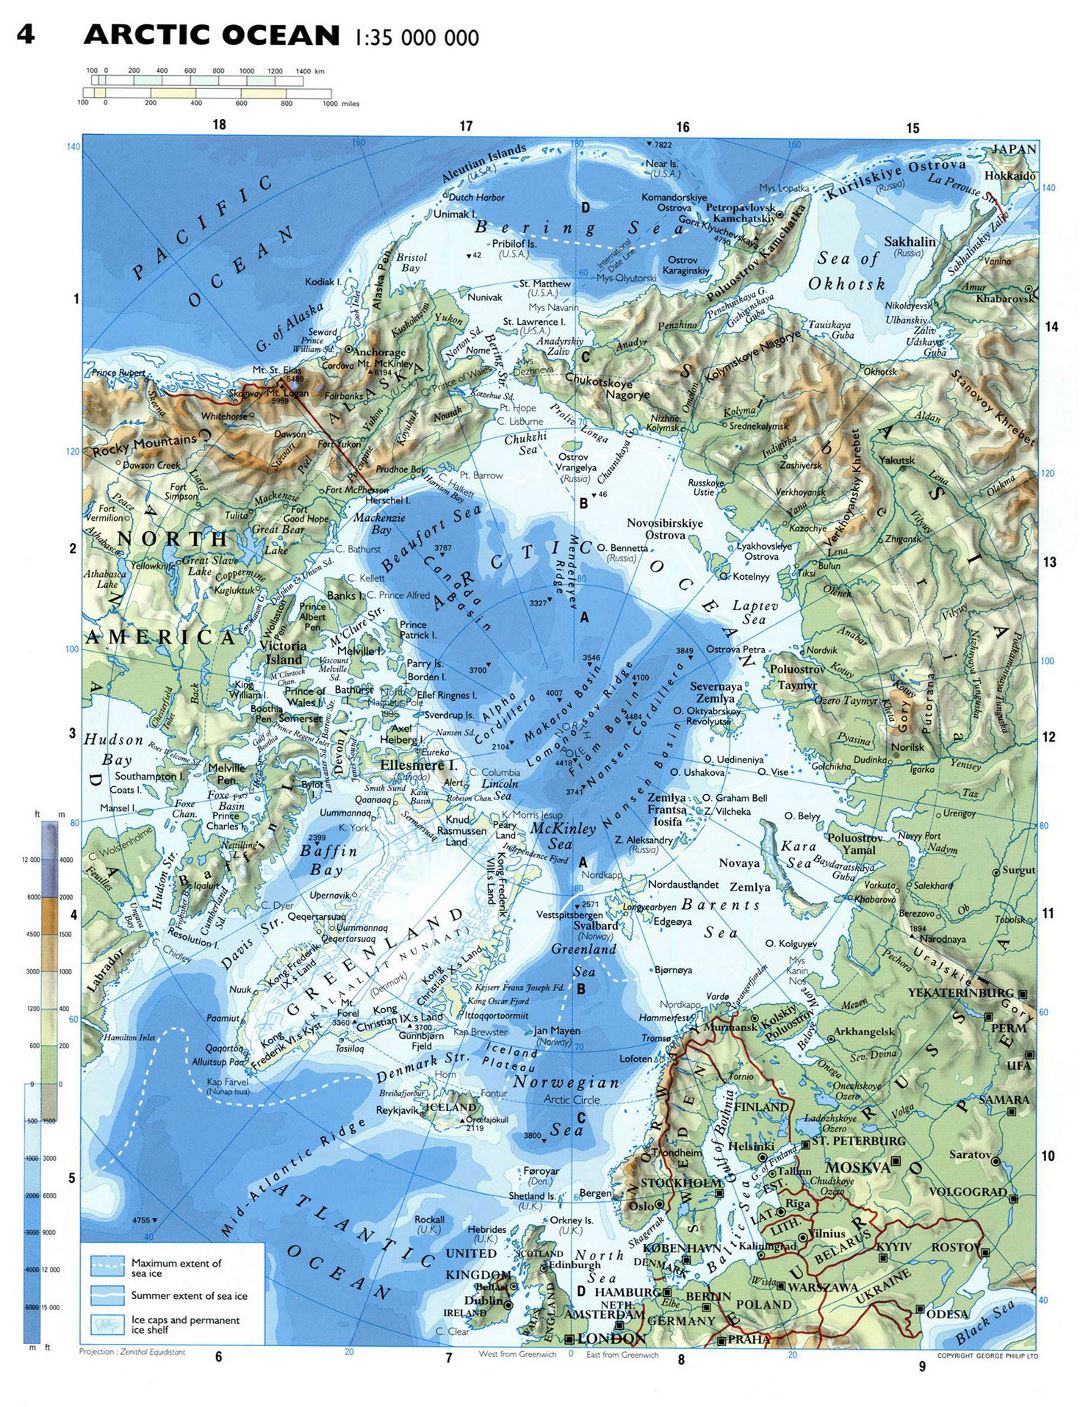 Mapa físico detallado del Océano Ártico